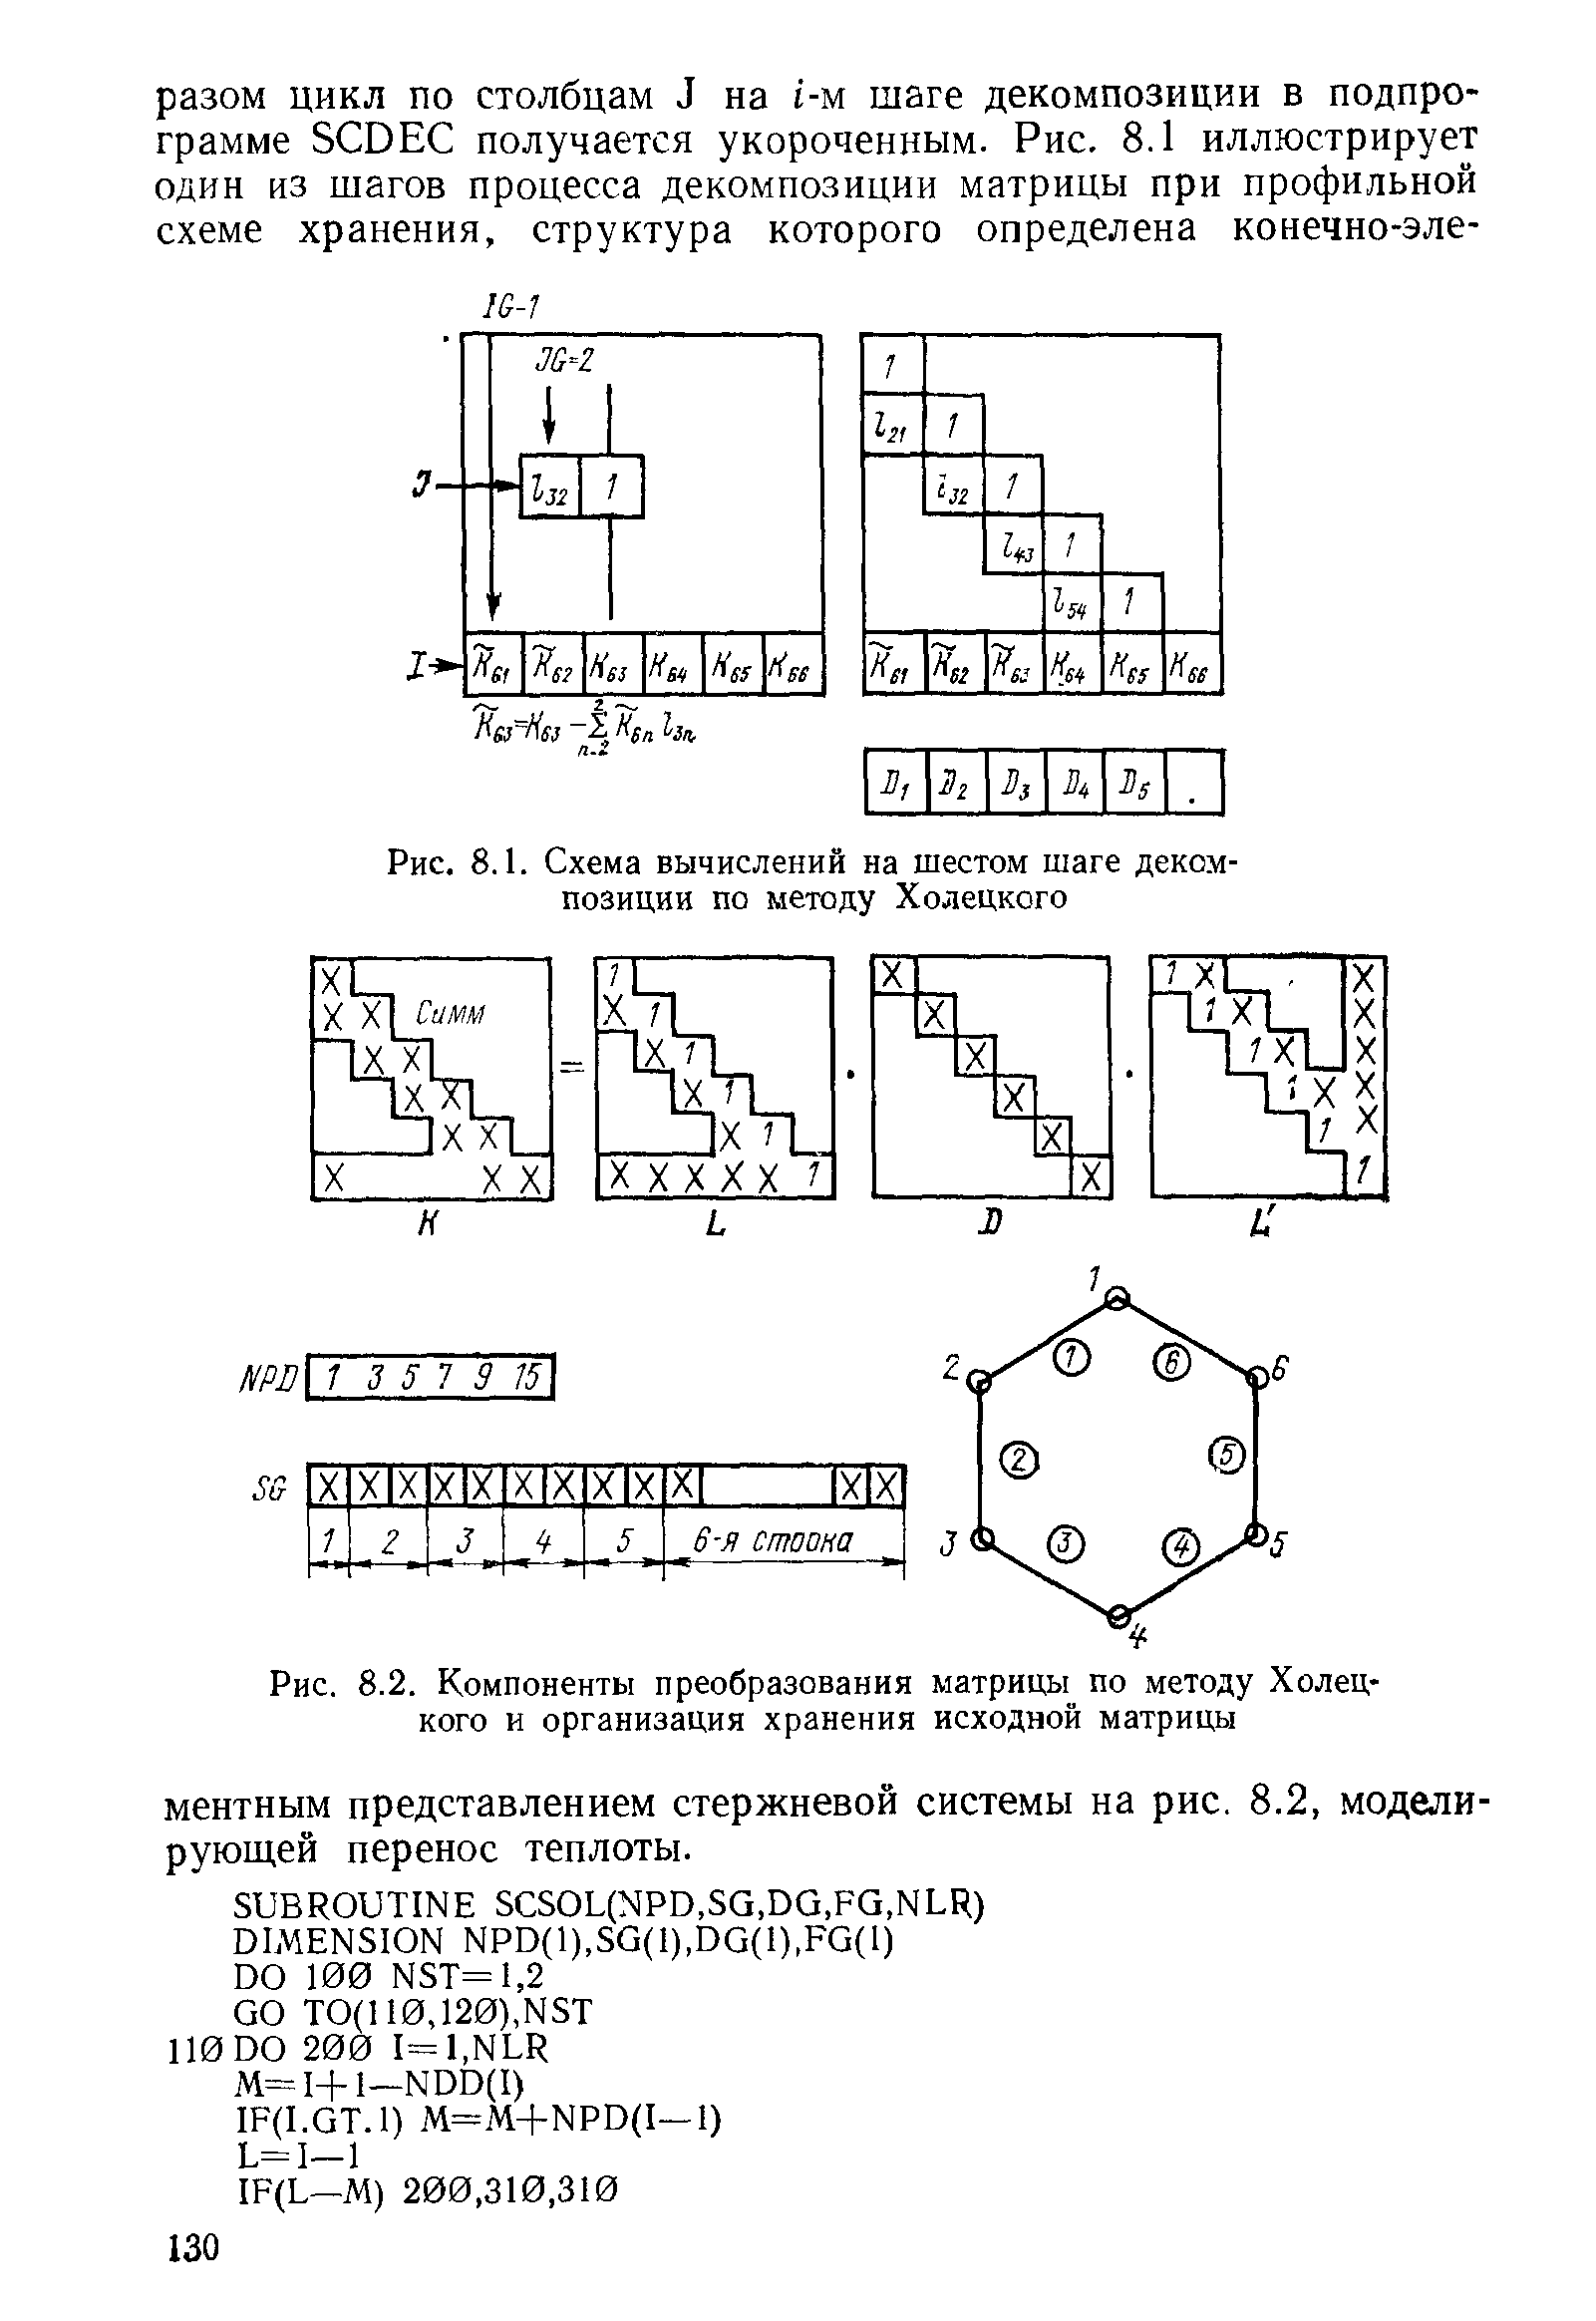 Рис. 8.1. Схема вычислений на шестом шаге декомпозиции по методу Холецкого
